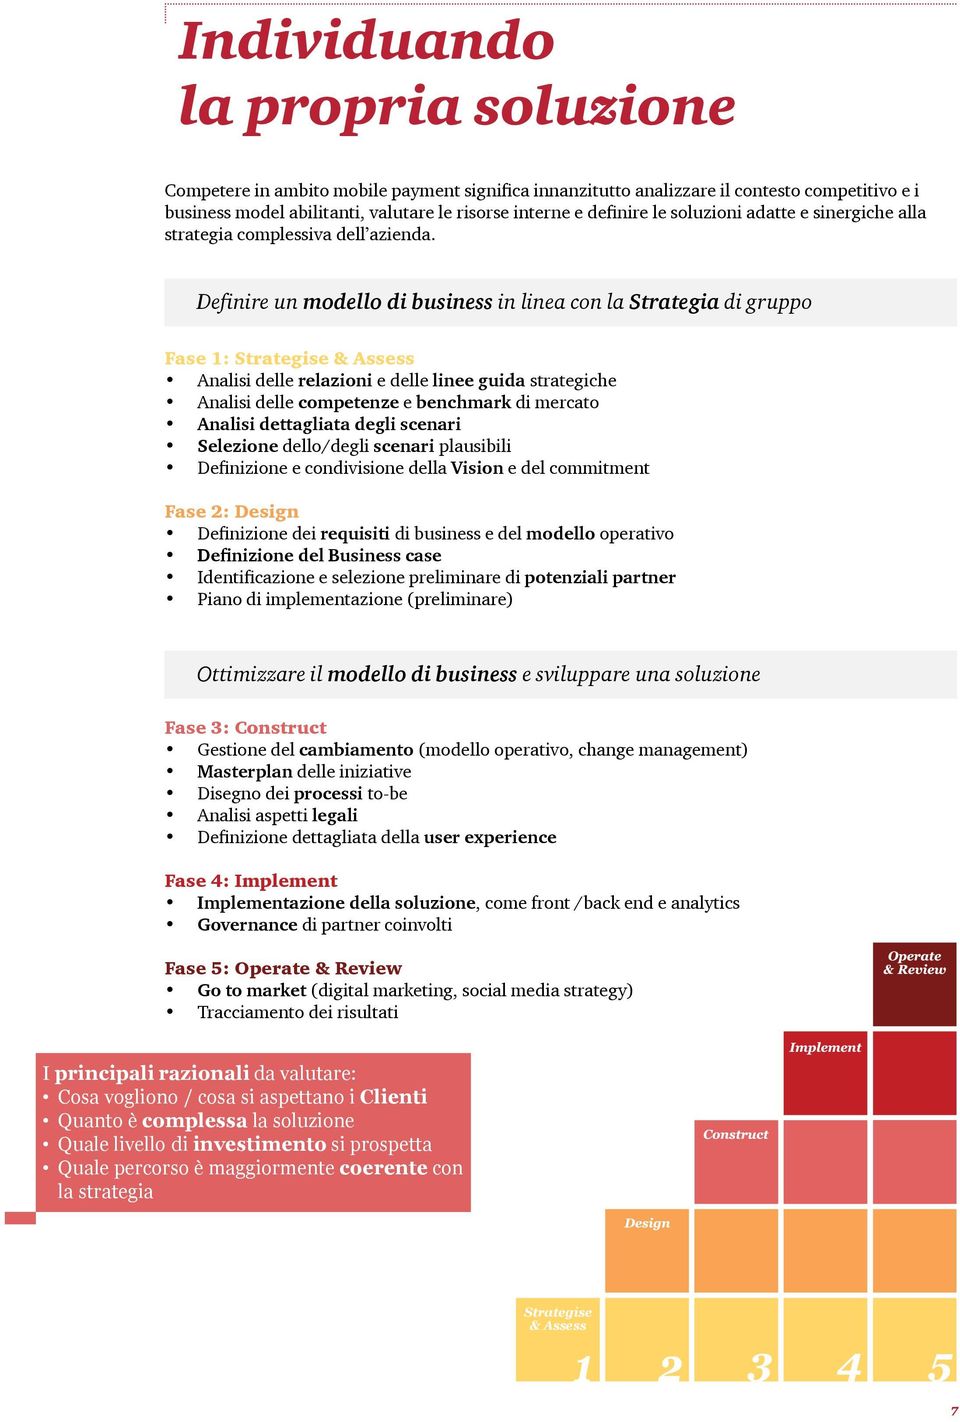 Definire un modello di business in linea con la Strategia di gruppo Fase 1: Strategise & Assess Analisi delle relazioni e delle linee guida strategiche Analisi delle competenze e benchmark di mercato